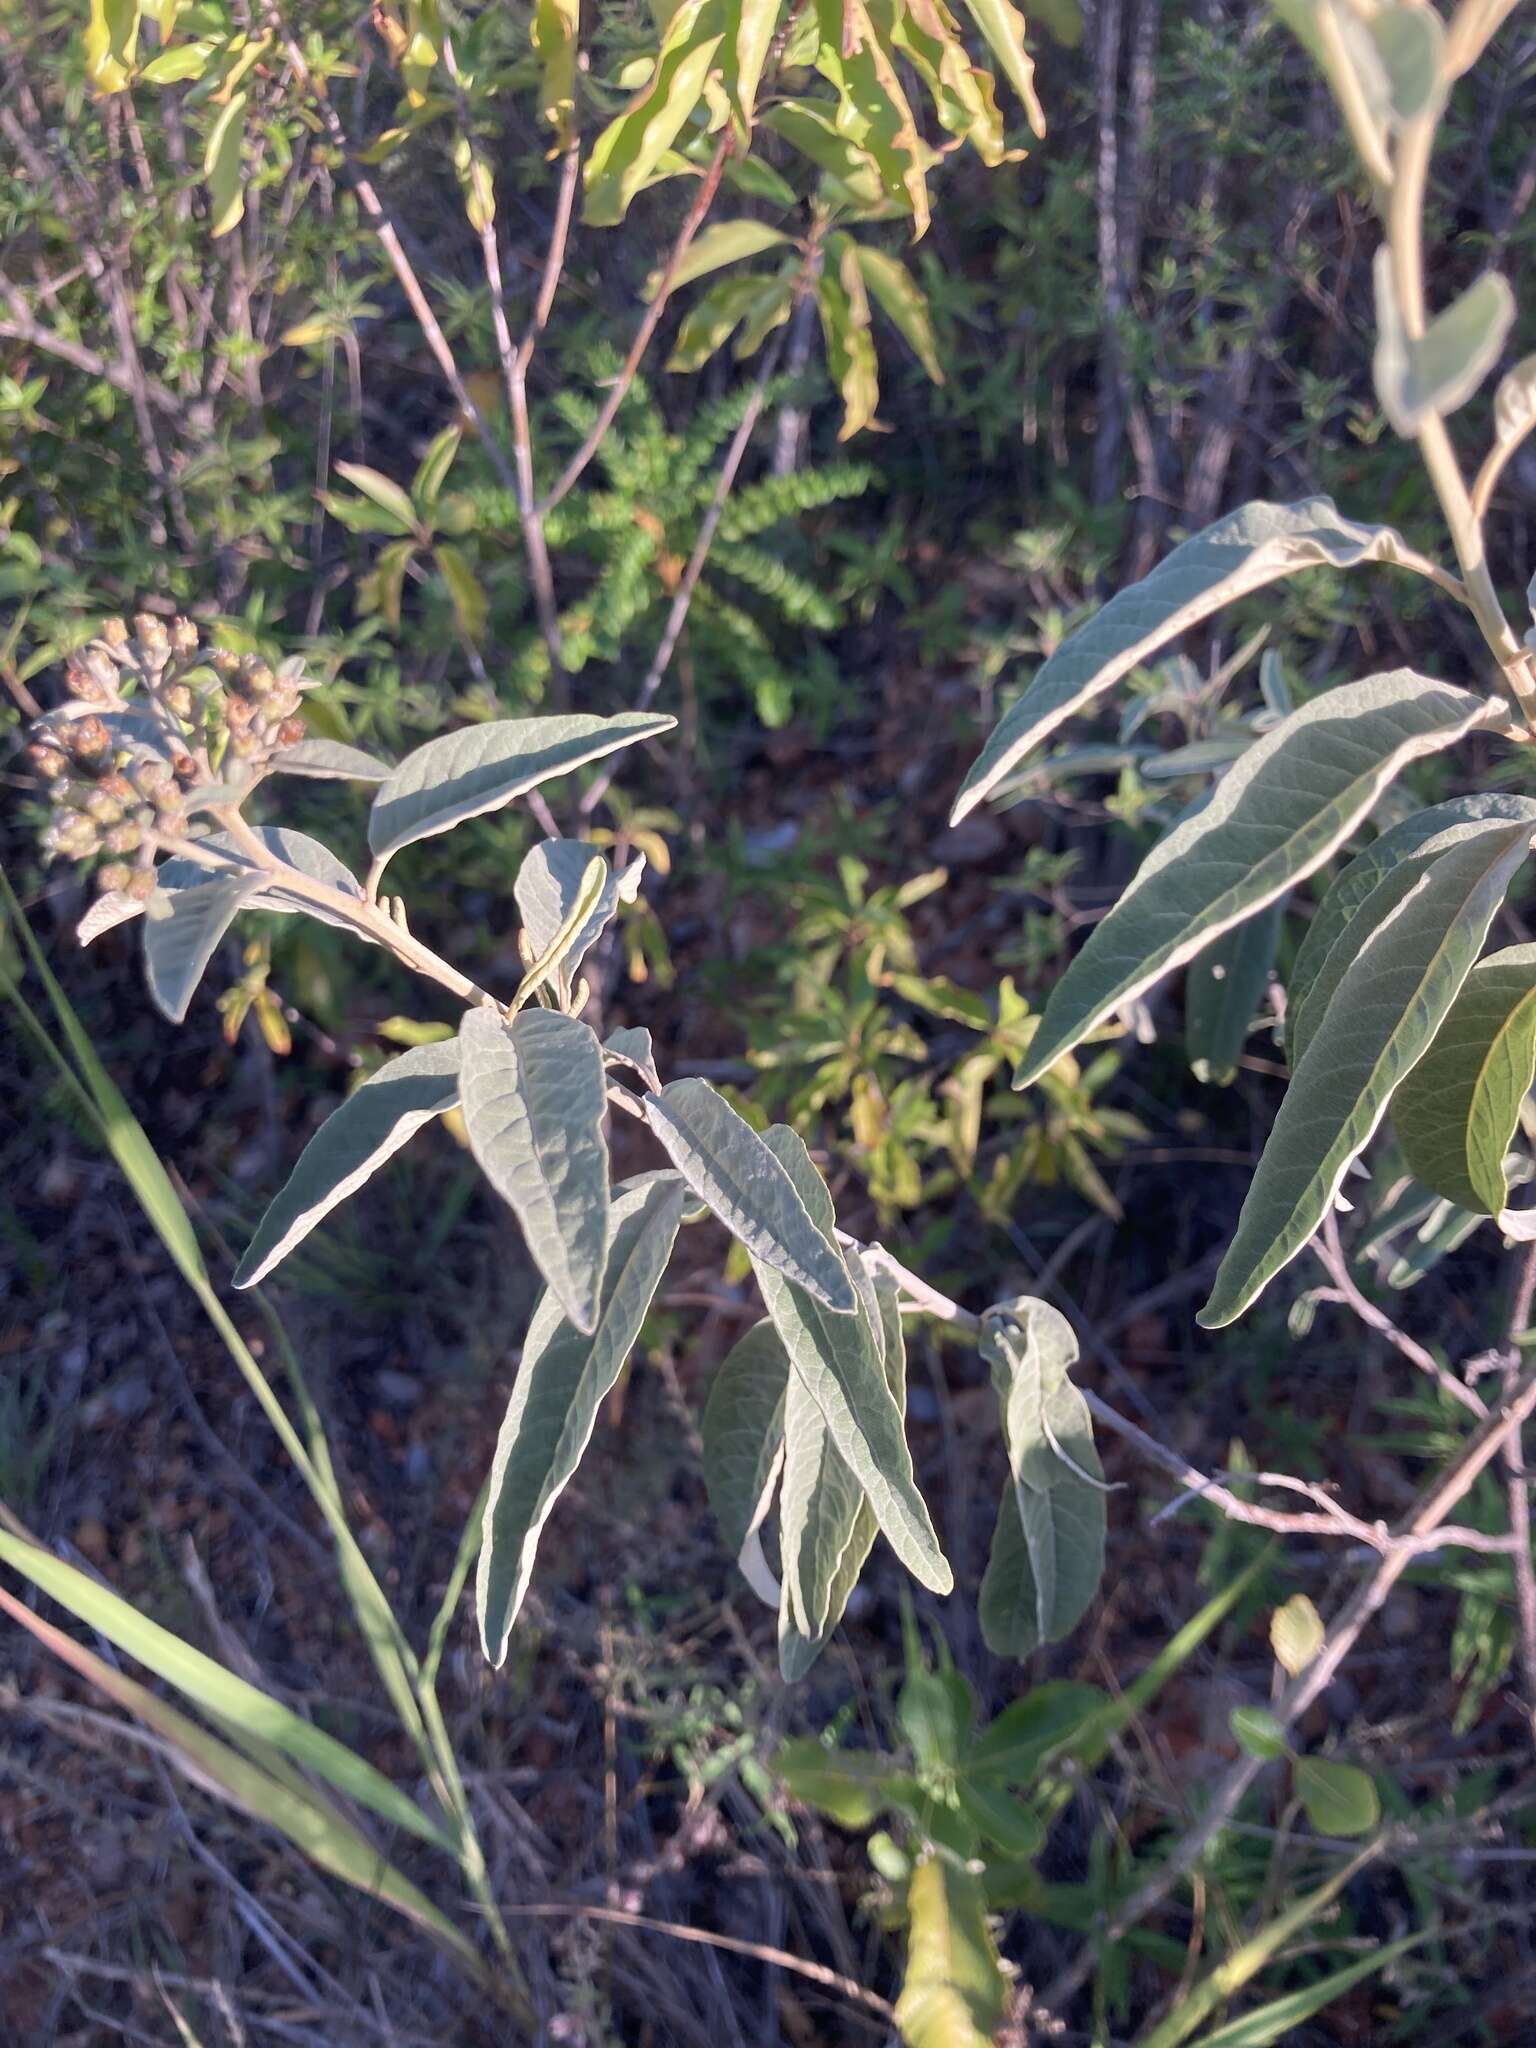 Image of velvetshrub